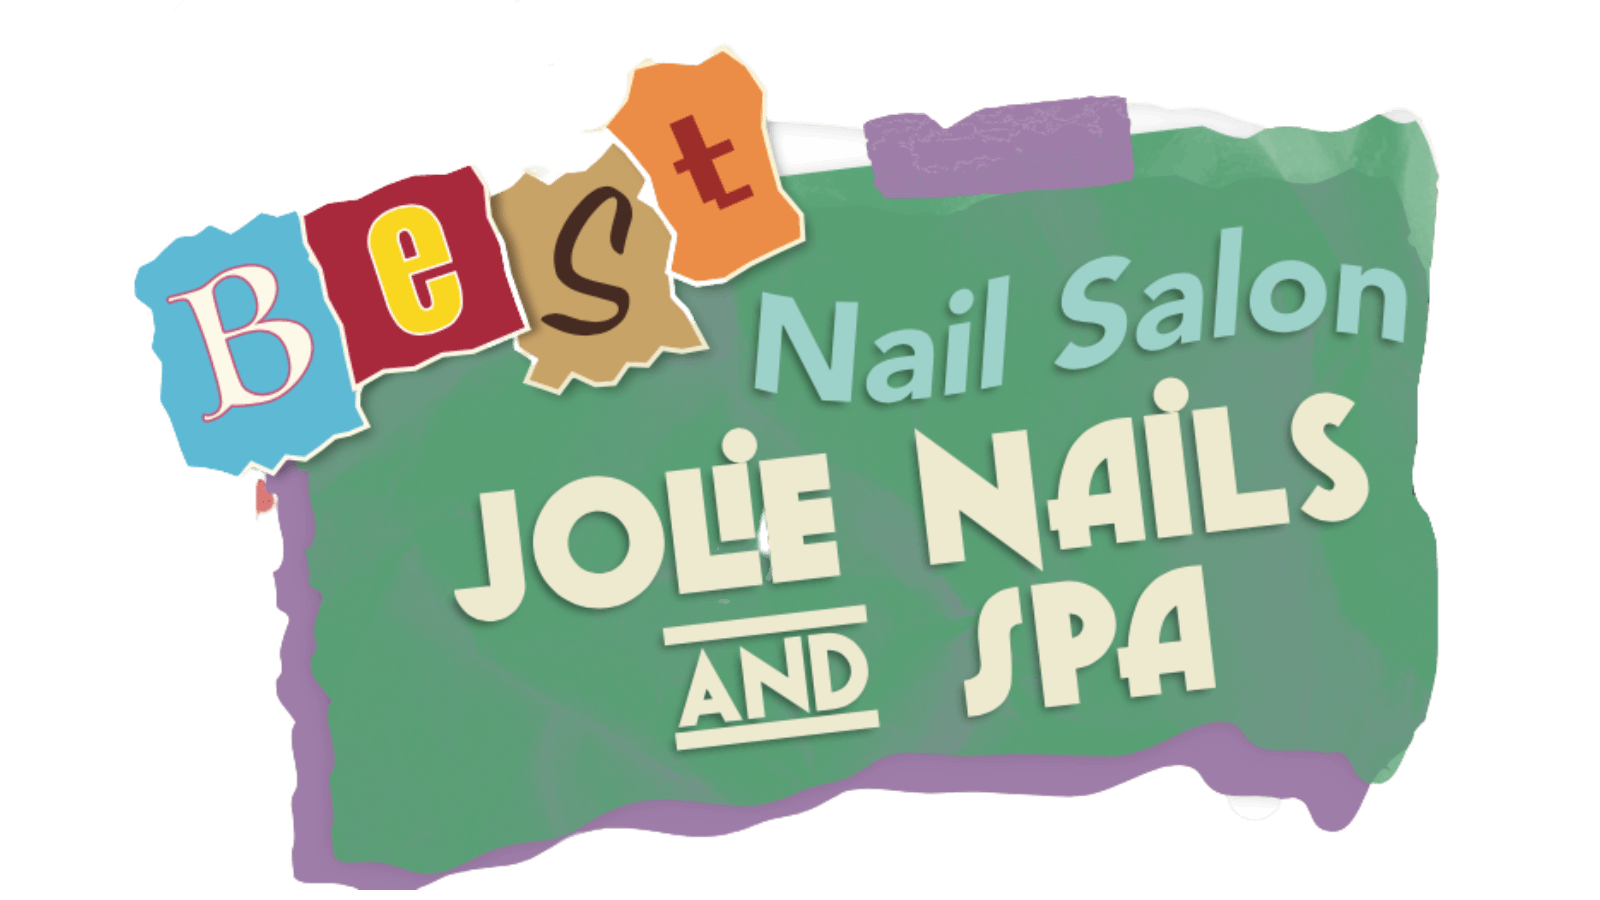 Nail Salon
5. Best Nail Art in Joliet, IL - wide 5